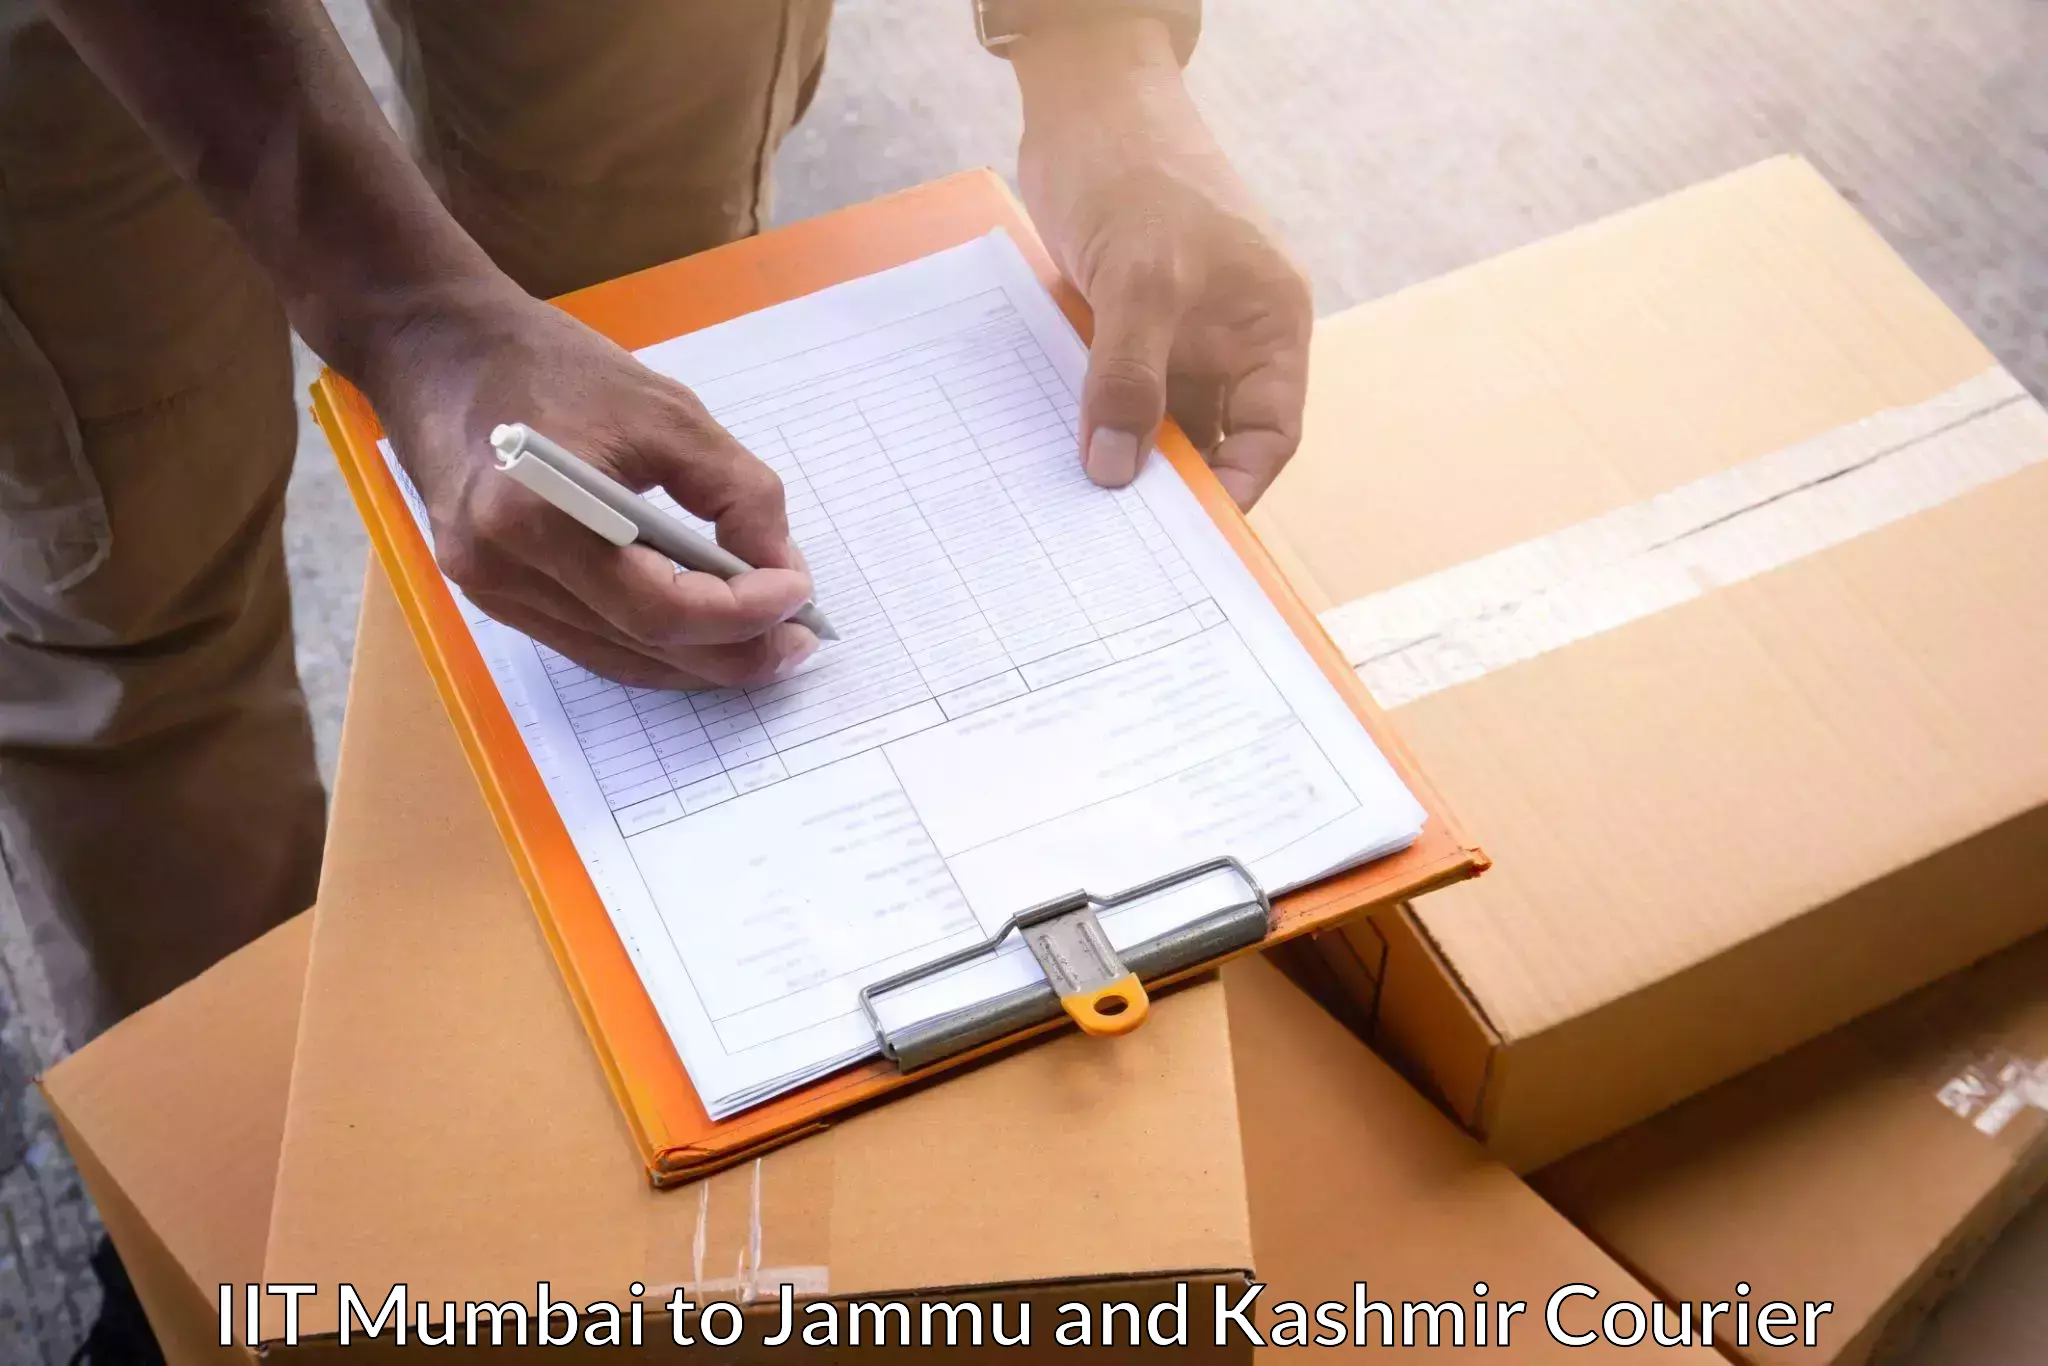 Premium courier solutions IIT Mumbai to Budgam